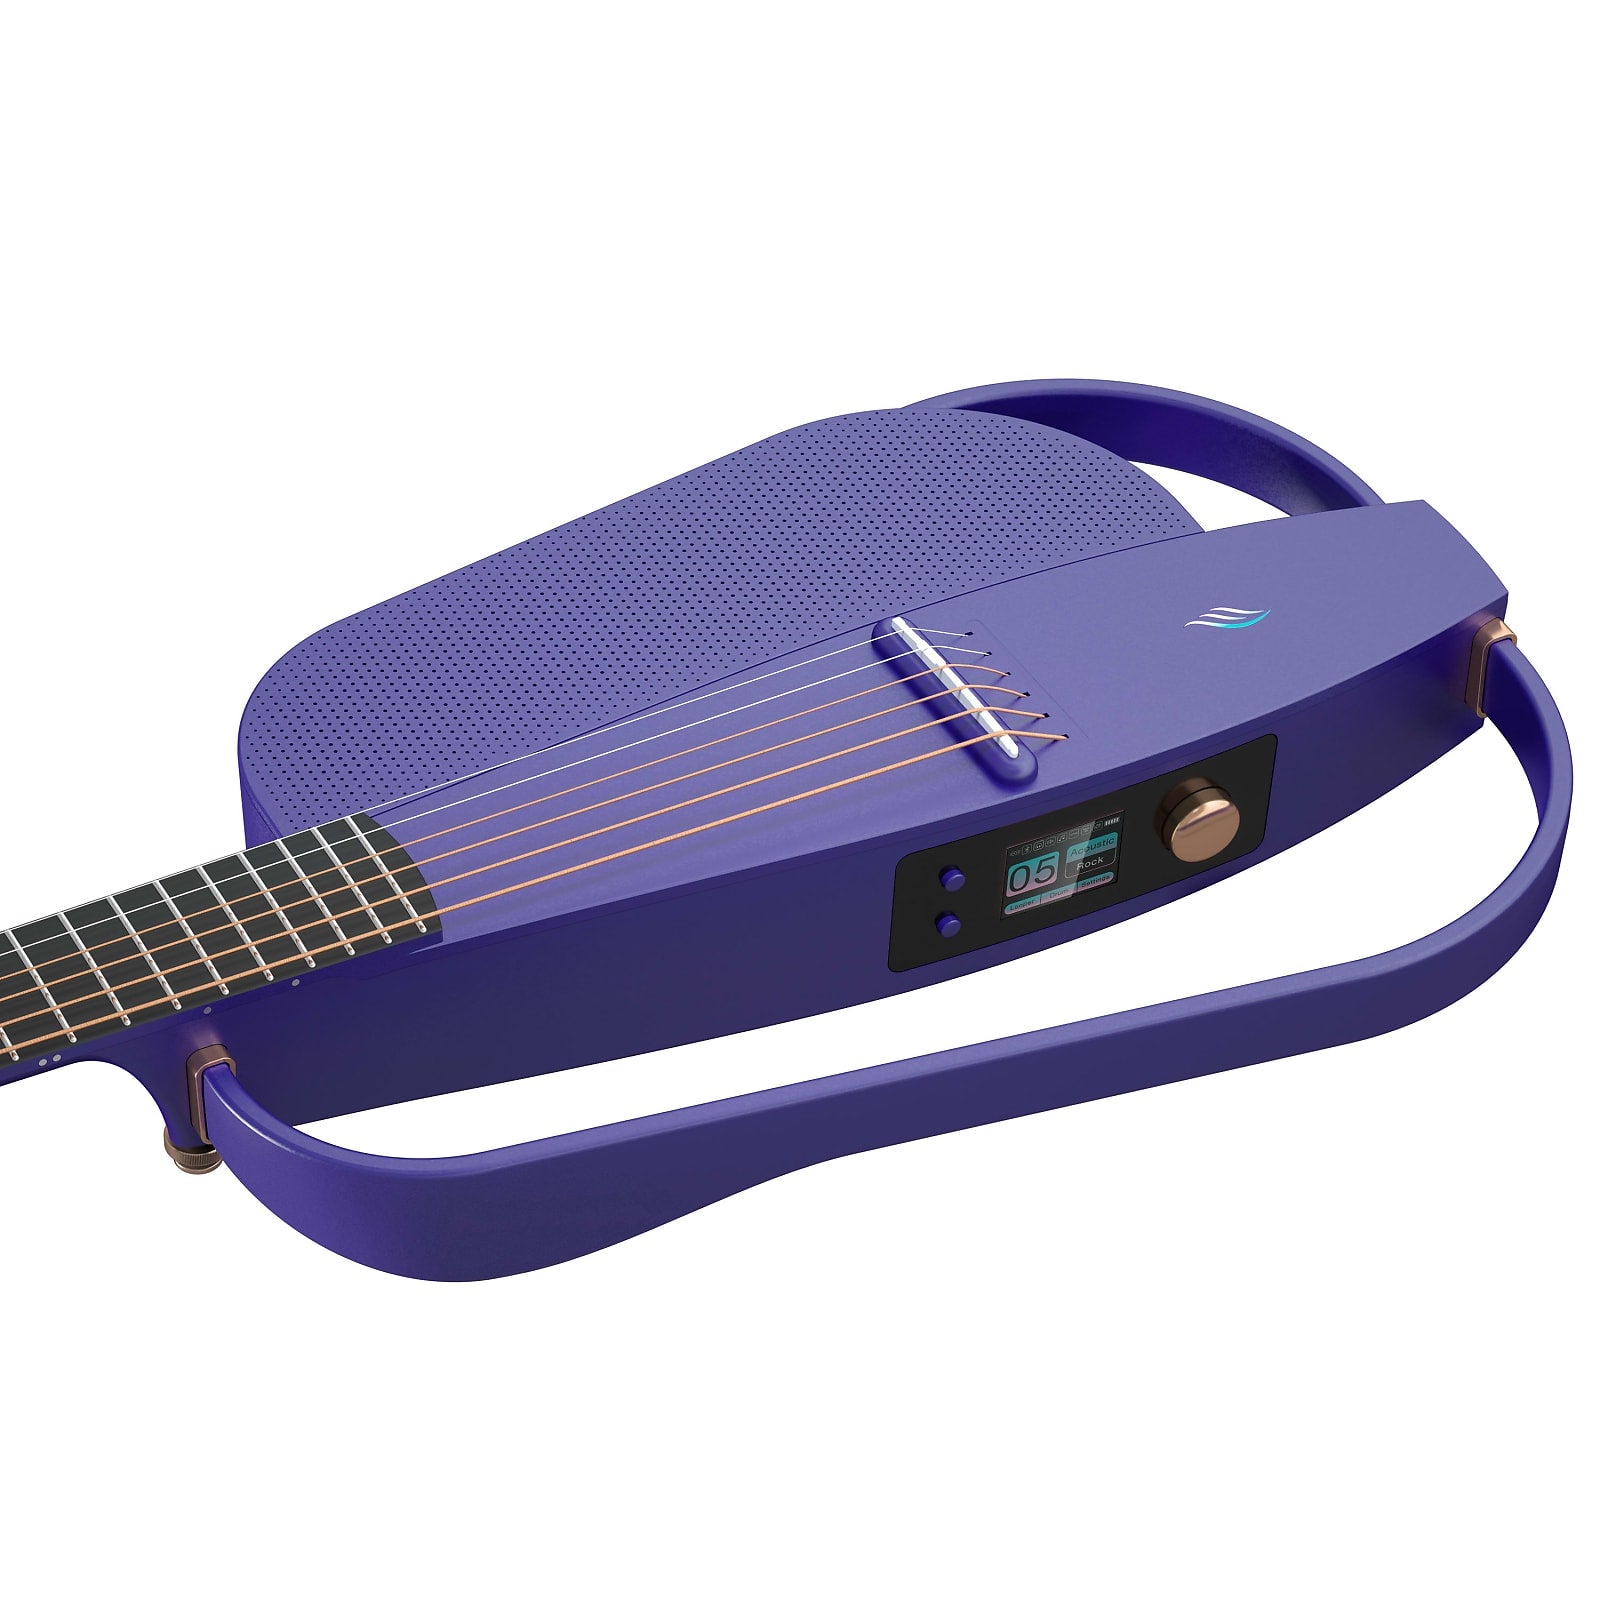 Enya NEXG2 2nd Edition 38Inch Smart Audio Guitar Purple W/Built In Speaker, Wireless Mic, Accessories